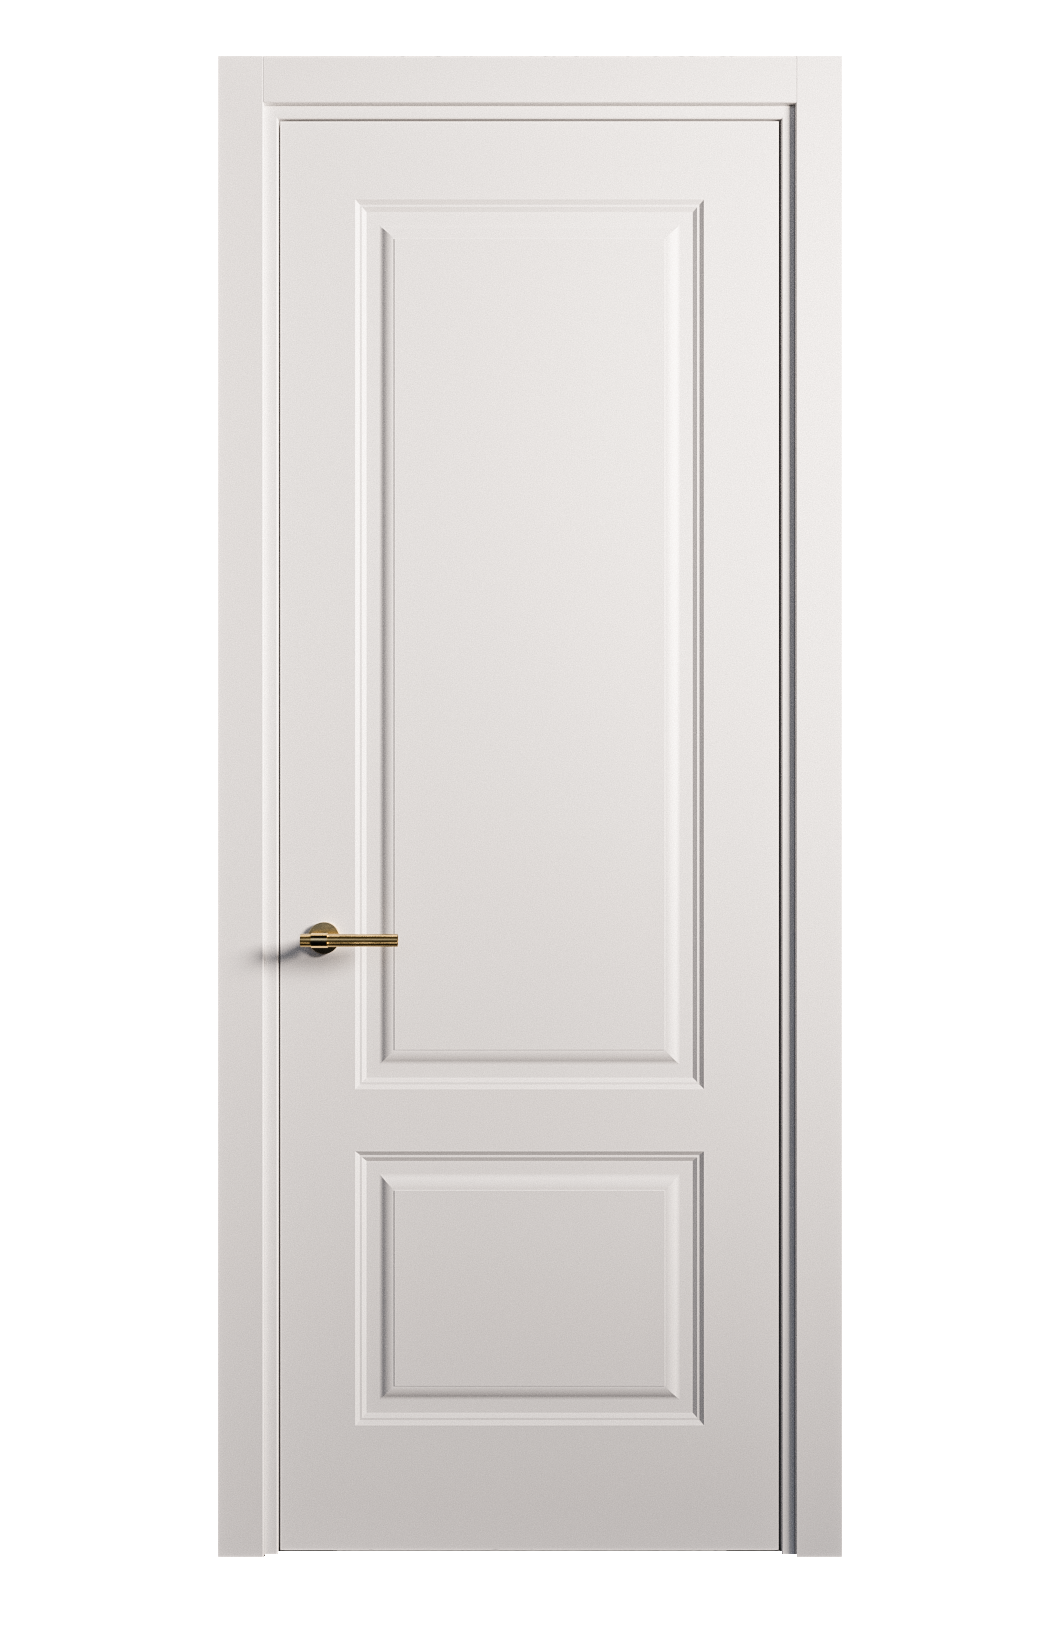 Межкомнатная дверь Вита-1 глухая эмаль ral 9003 26258